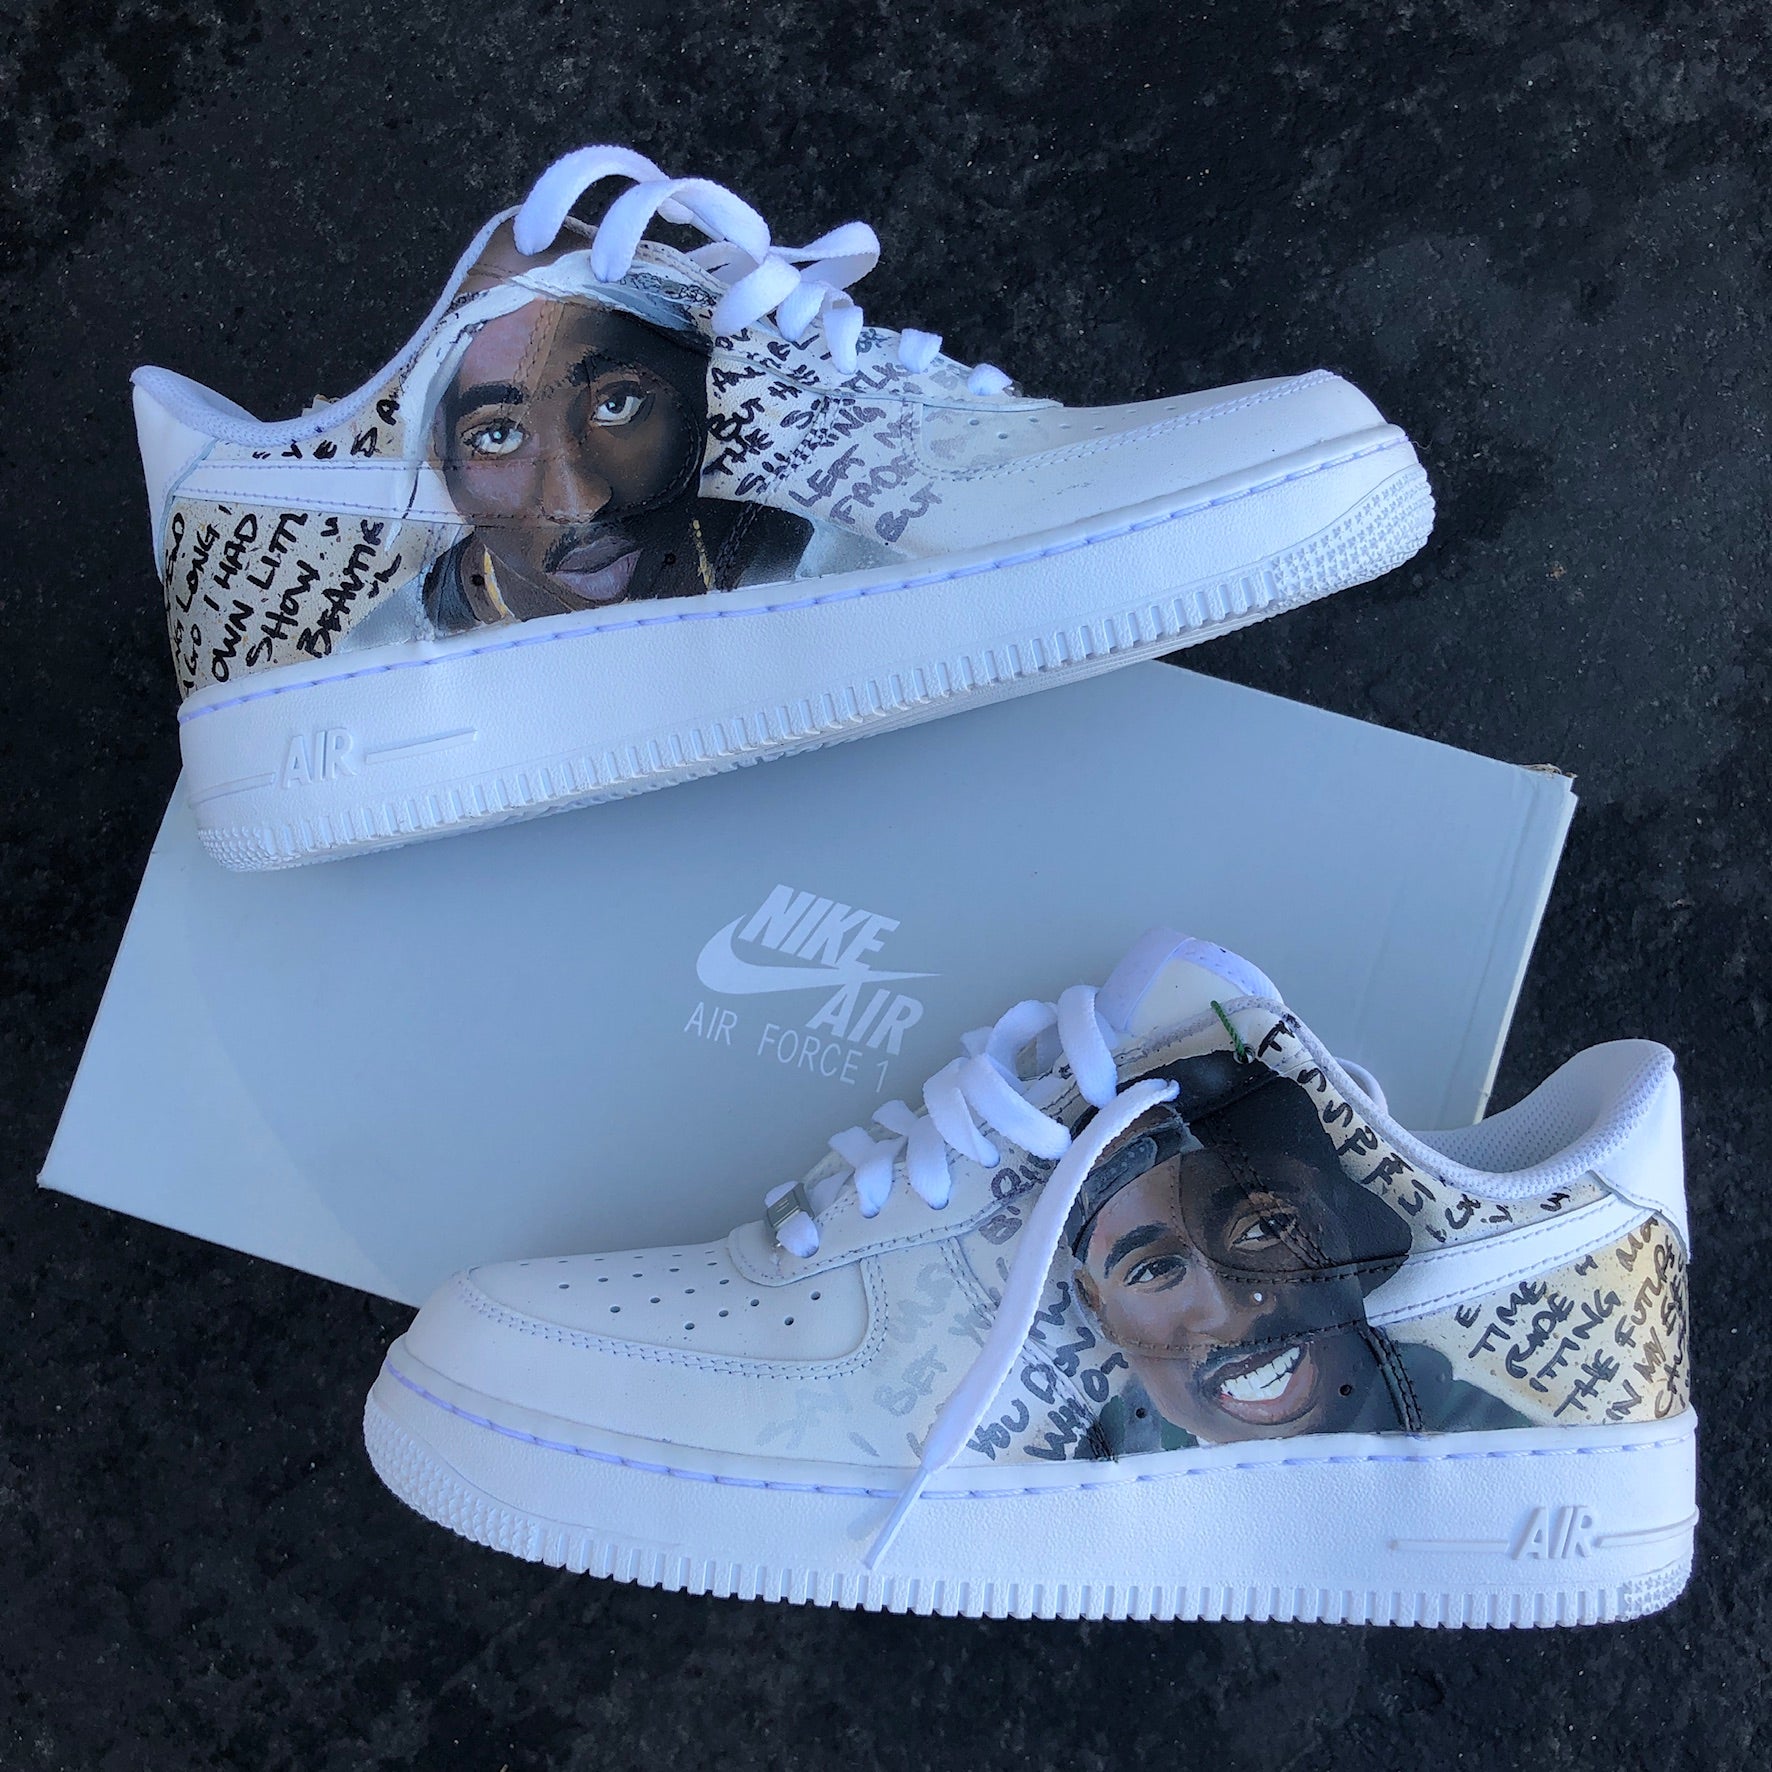 Untado roto recoger Tupac Portrait Nike Air Force 1s – B Street Shoes